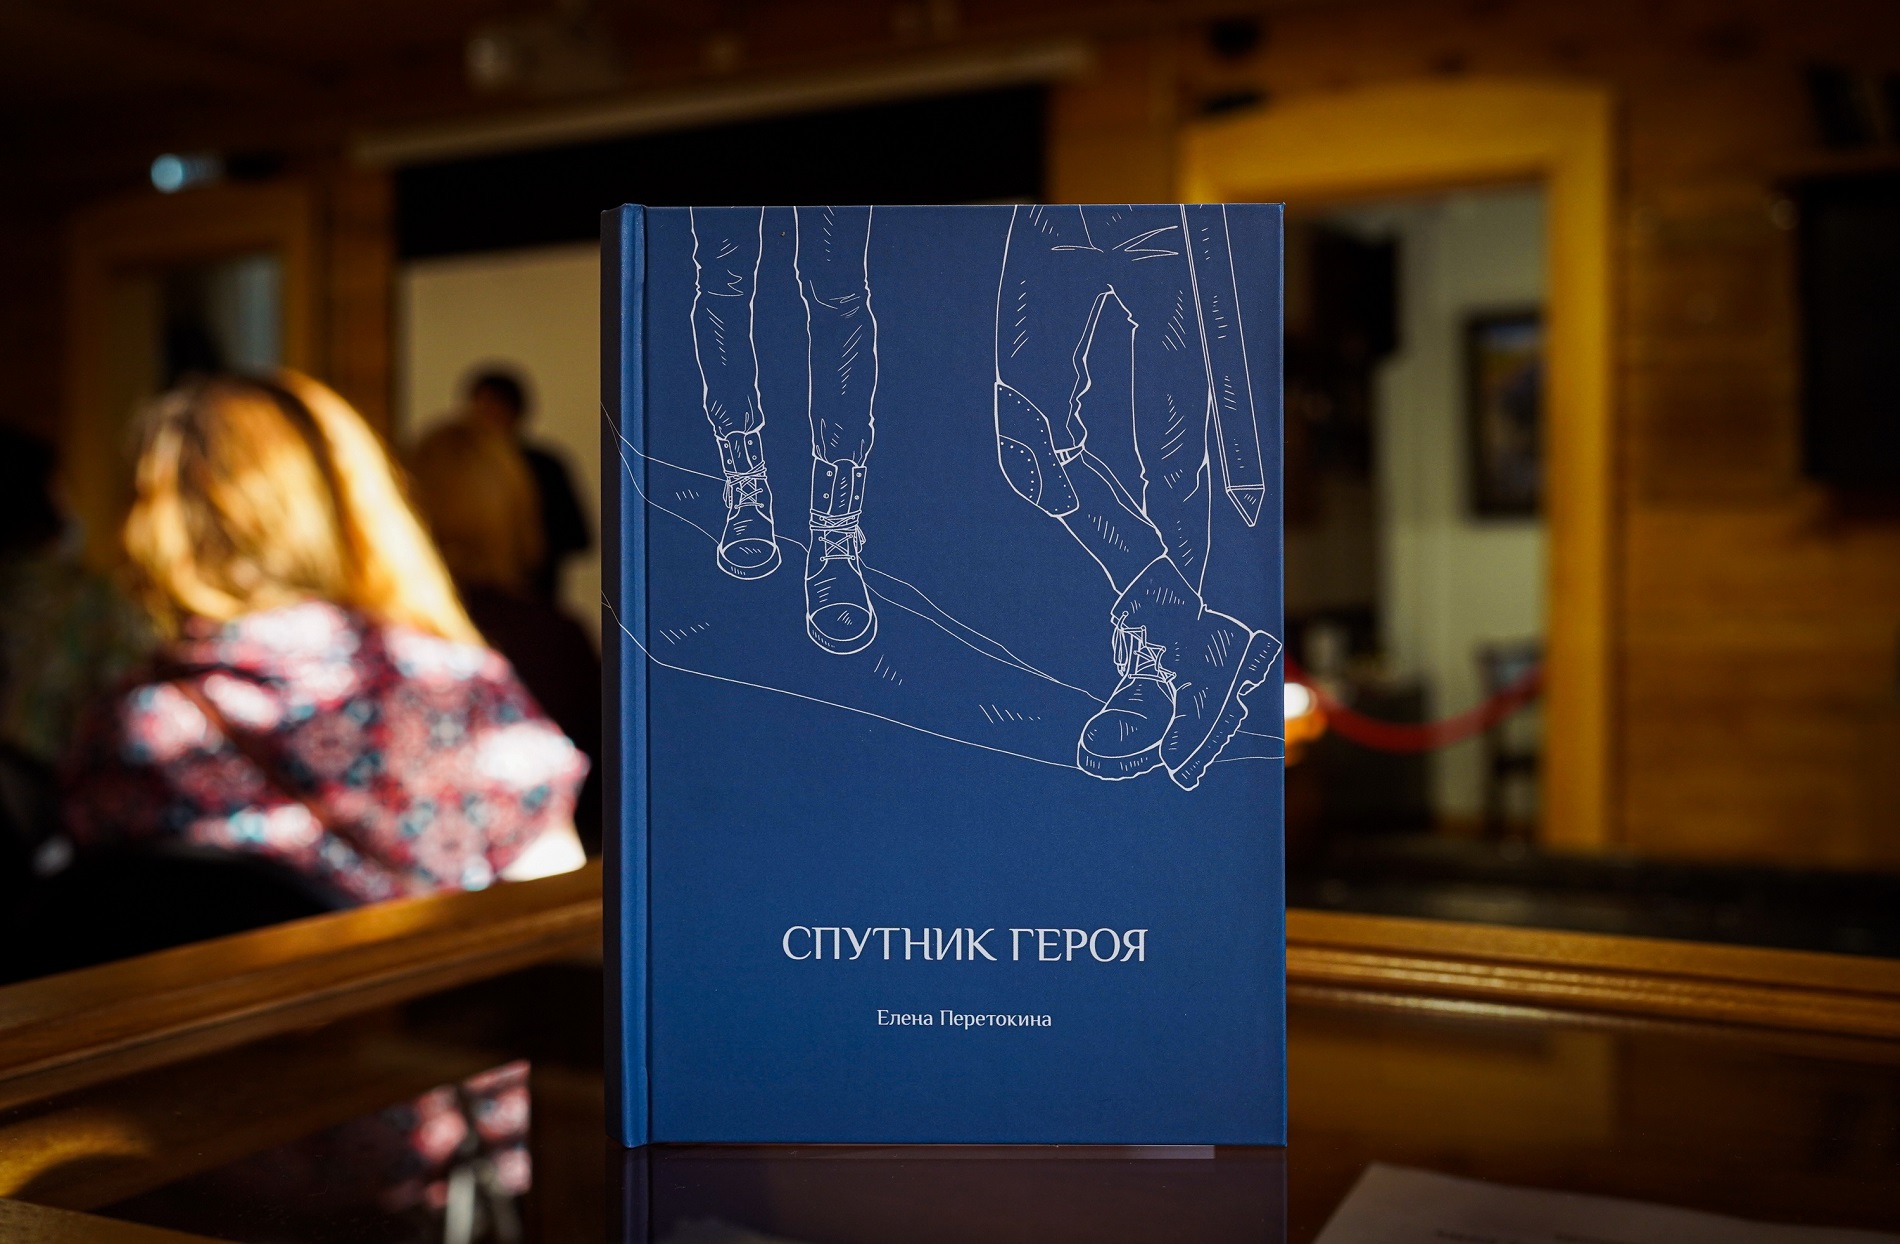 В Музее В.Г. Распутина 27 февраля состоялась презентация первой книги поэта Елены Перетокиной «Спутник героя»